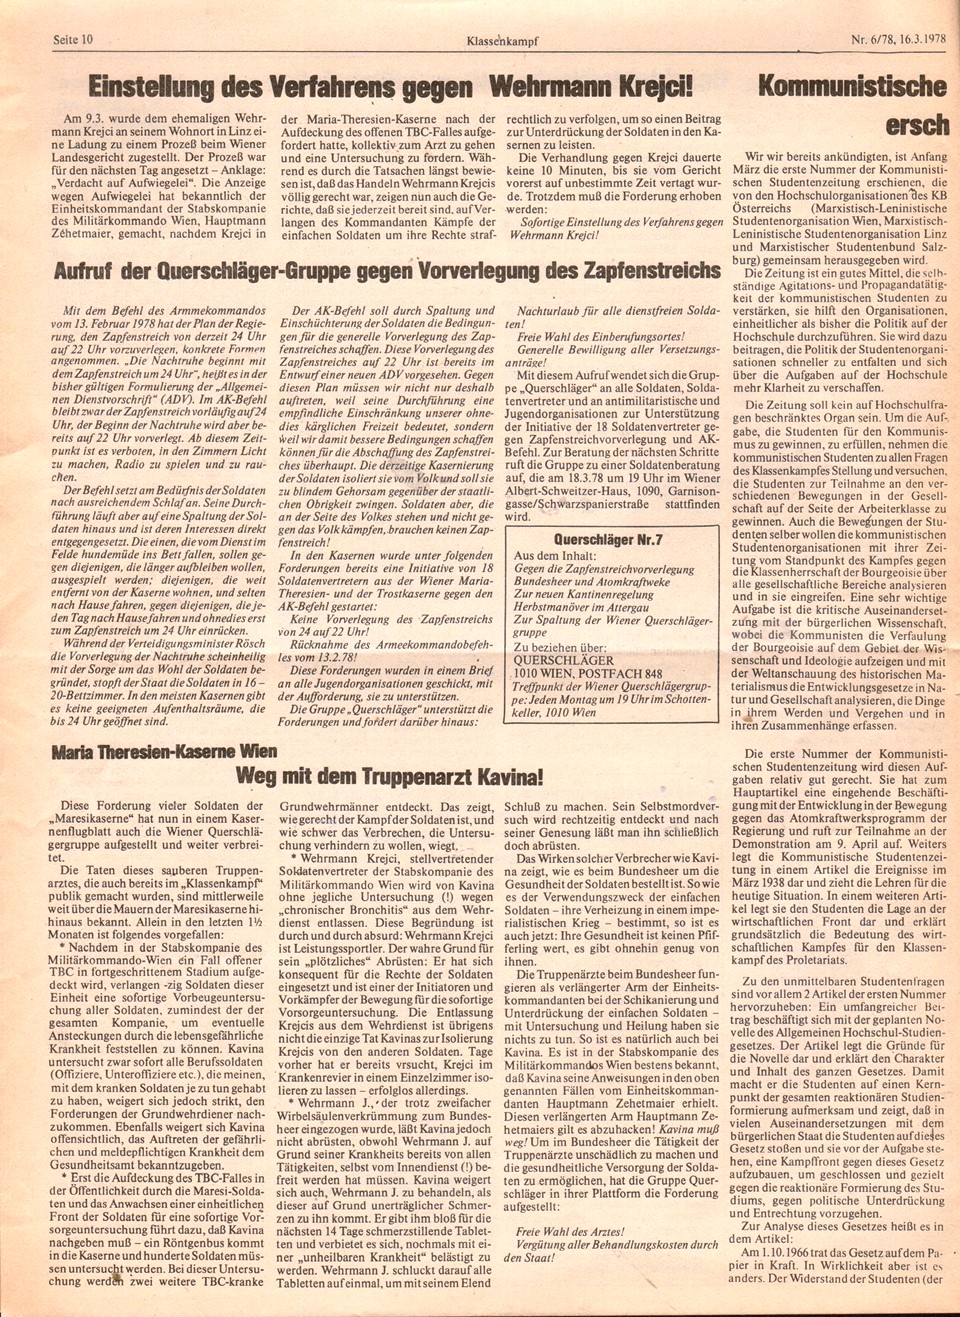 KBOe_Klassenkampf_1978_06_10